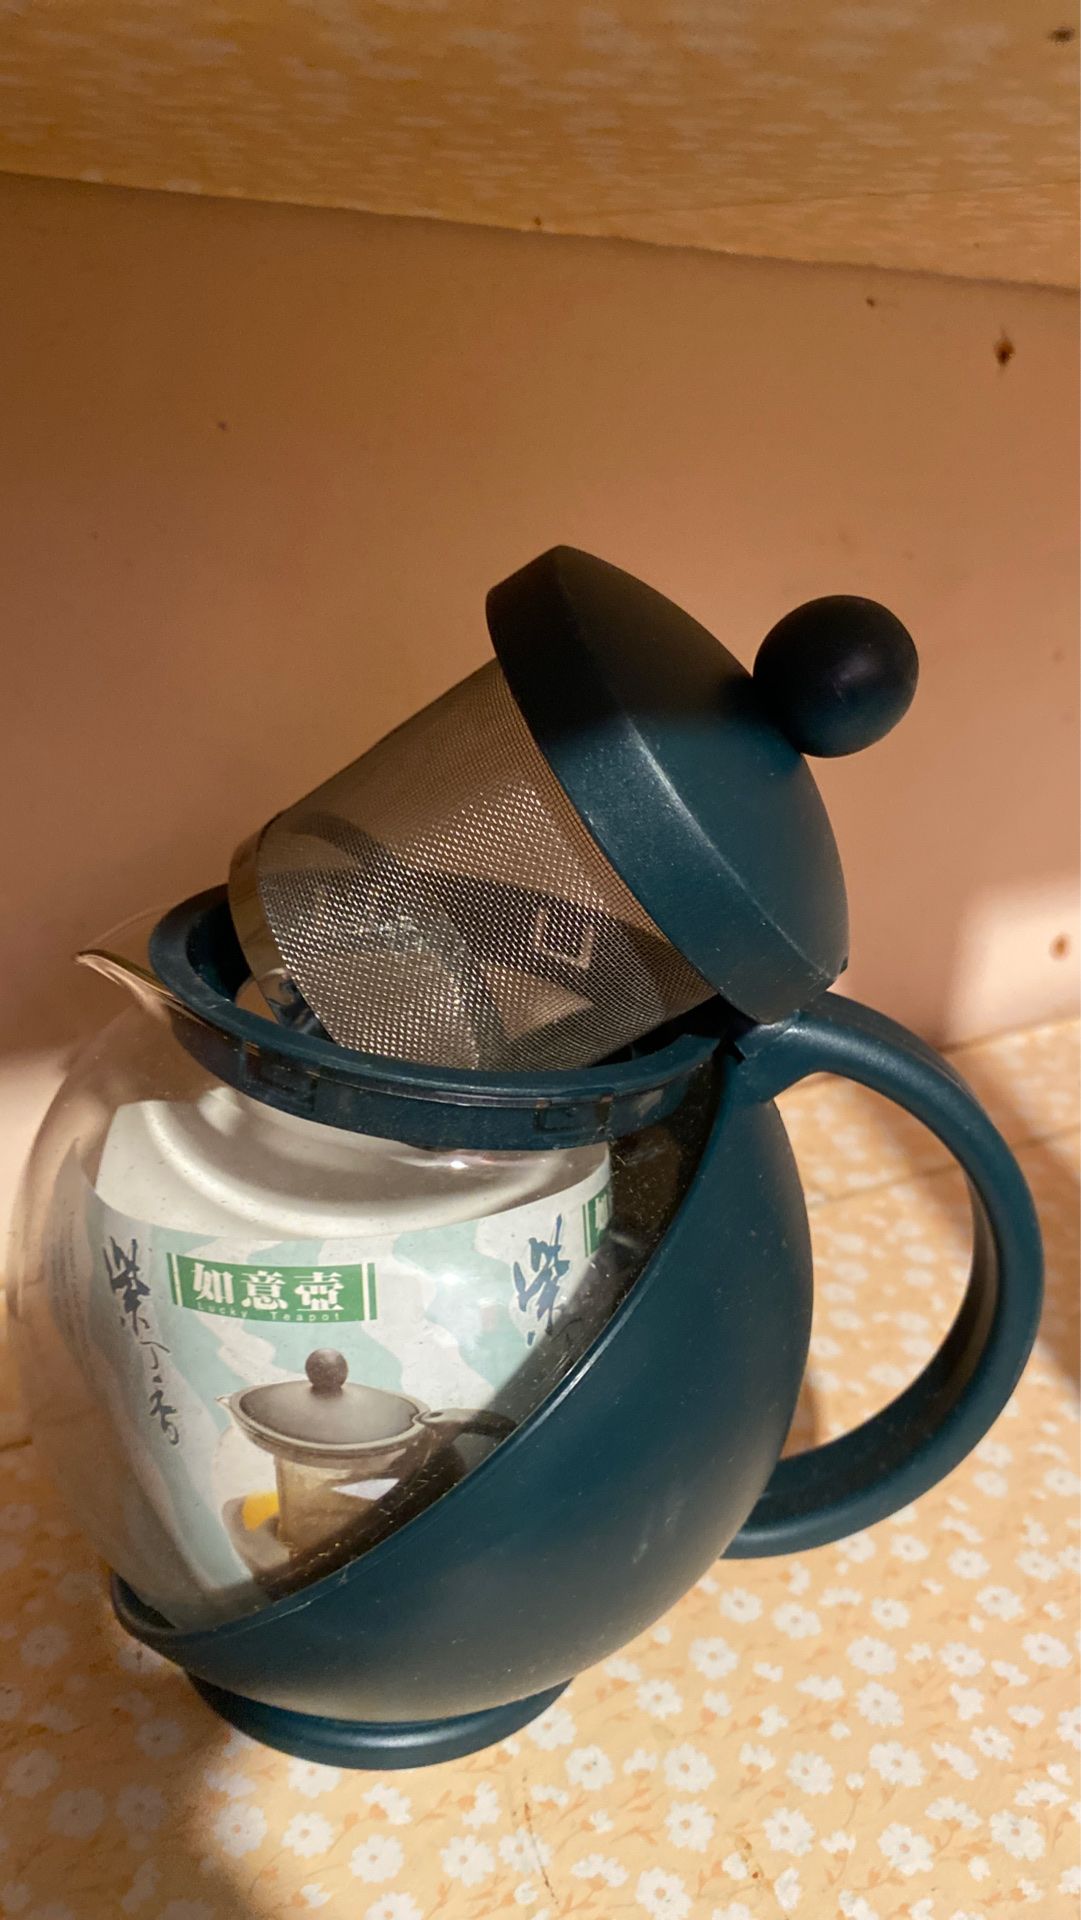 New tea pot